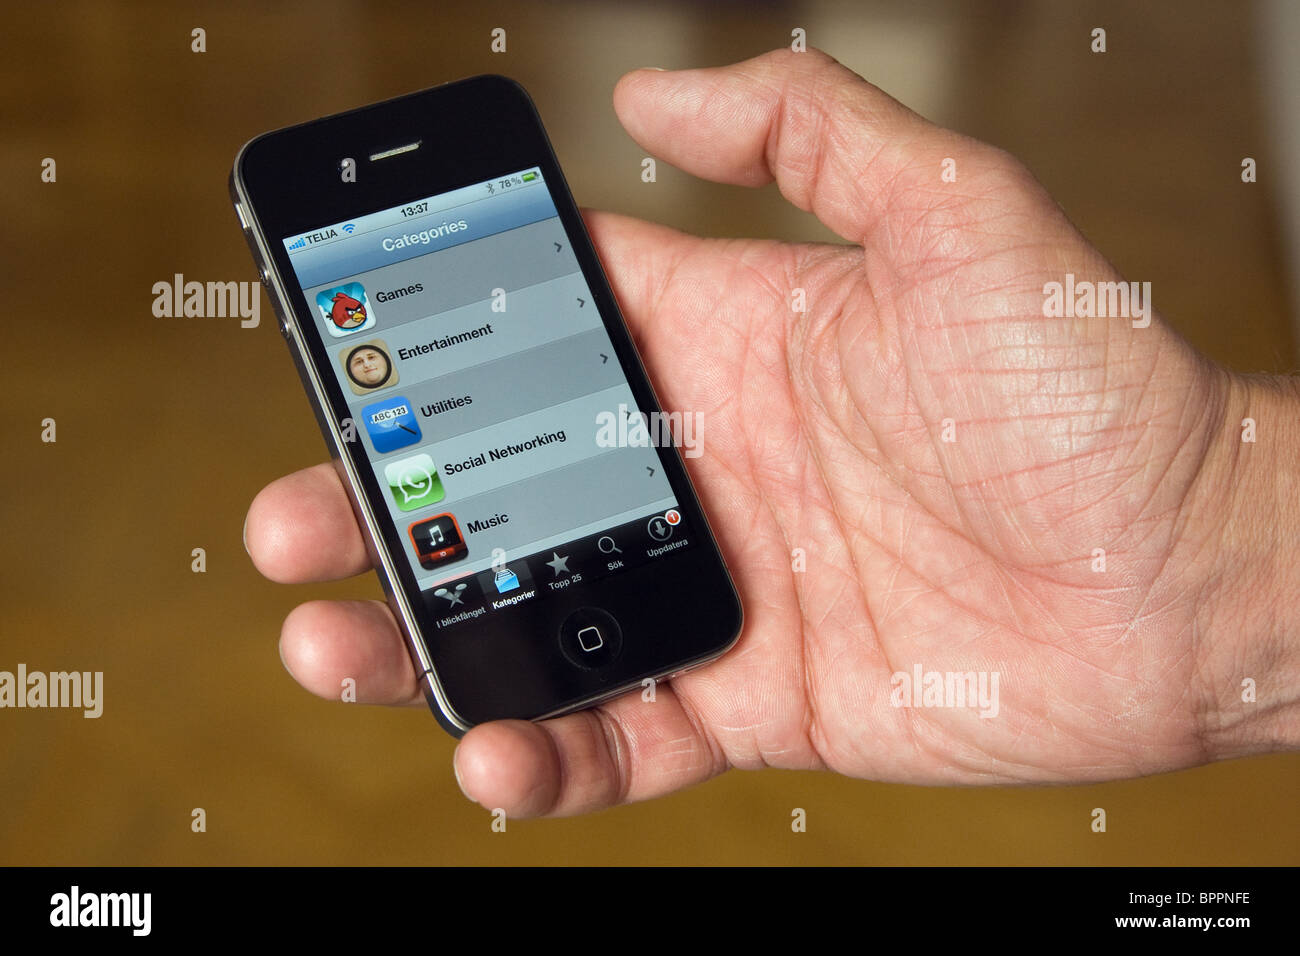 L'iPhone 4 nel palmo della mano di un uomo. Sullo schermo si possono vedere le App Store. Foto Stock